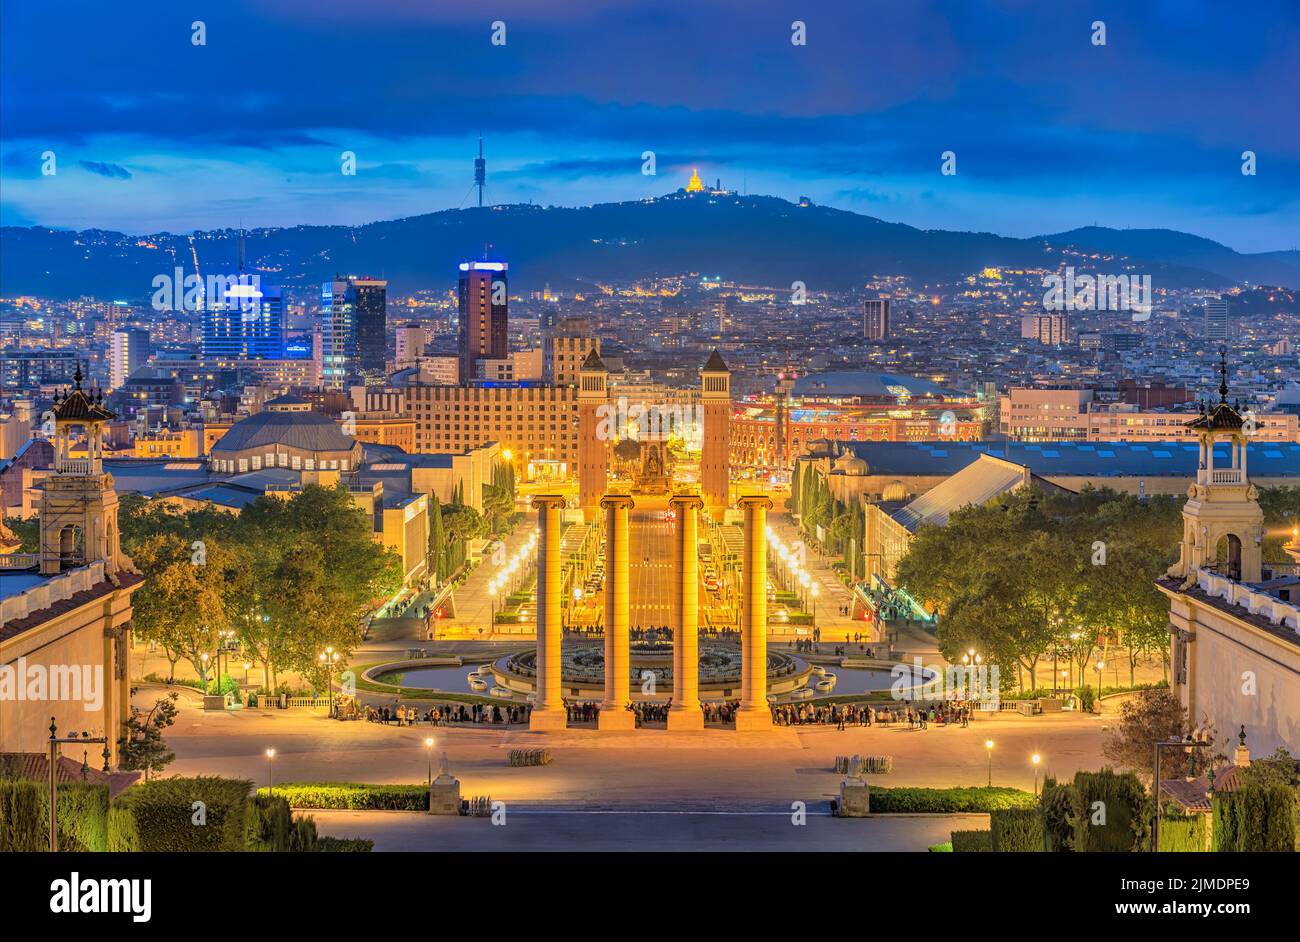 Barcelone Espagne, vue panoramique nocturne de la ville sur la place Espanya de Barcelone Banque D'Images